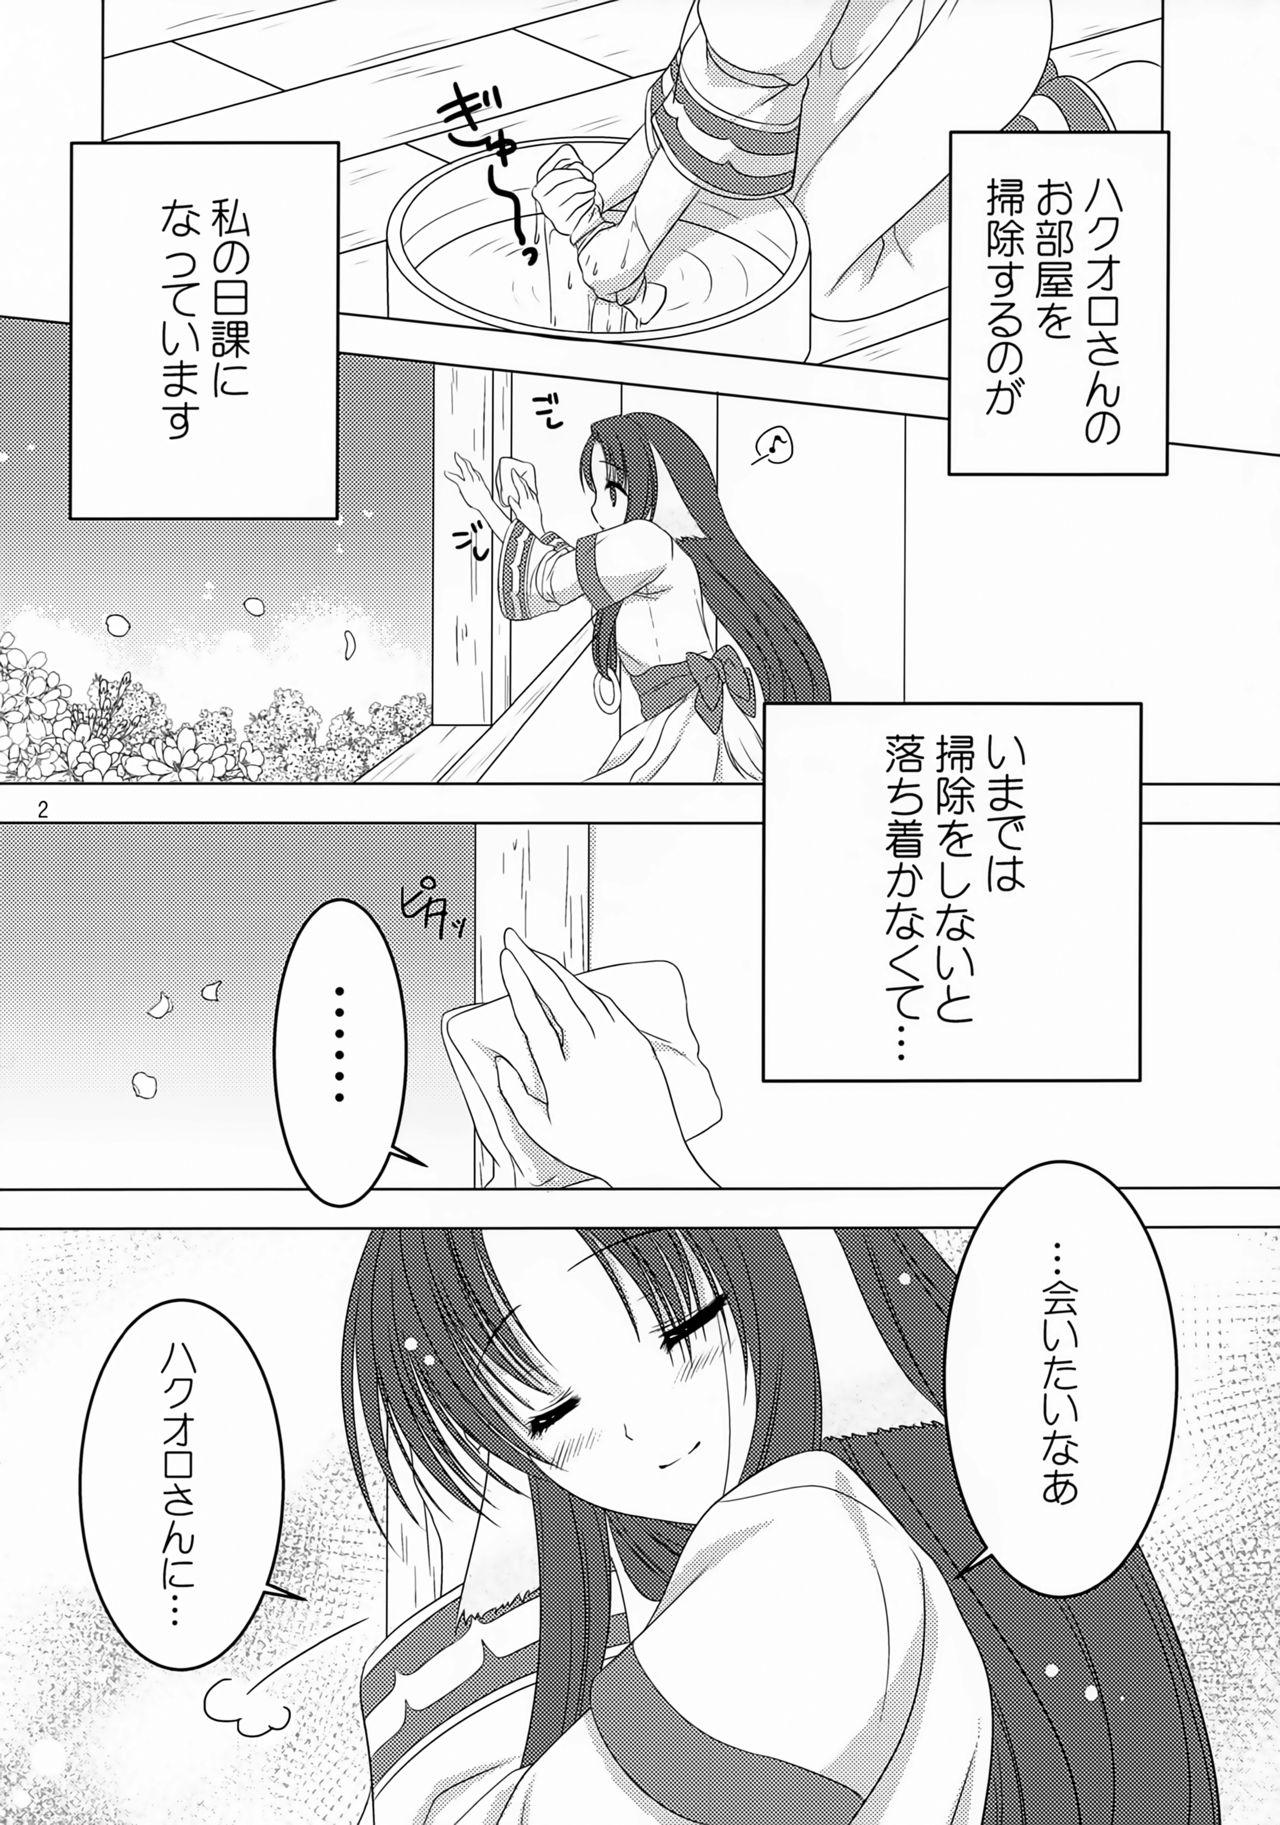 Double Penetration Sakura no Koku - Utawarerumono Cruising - Page 3